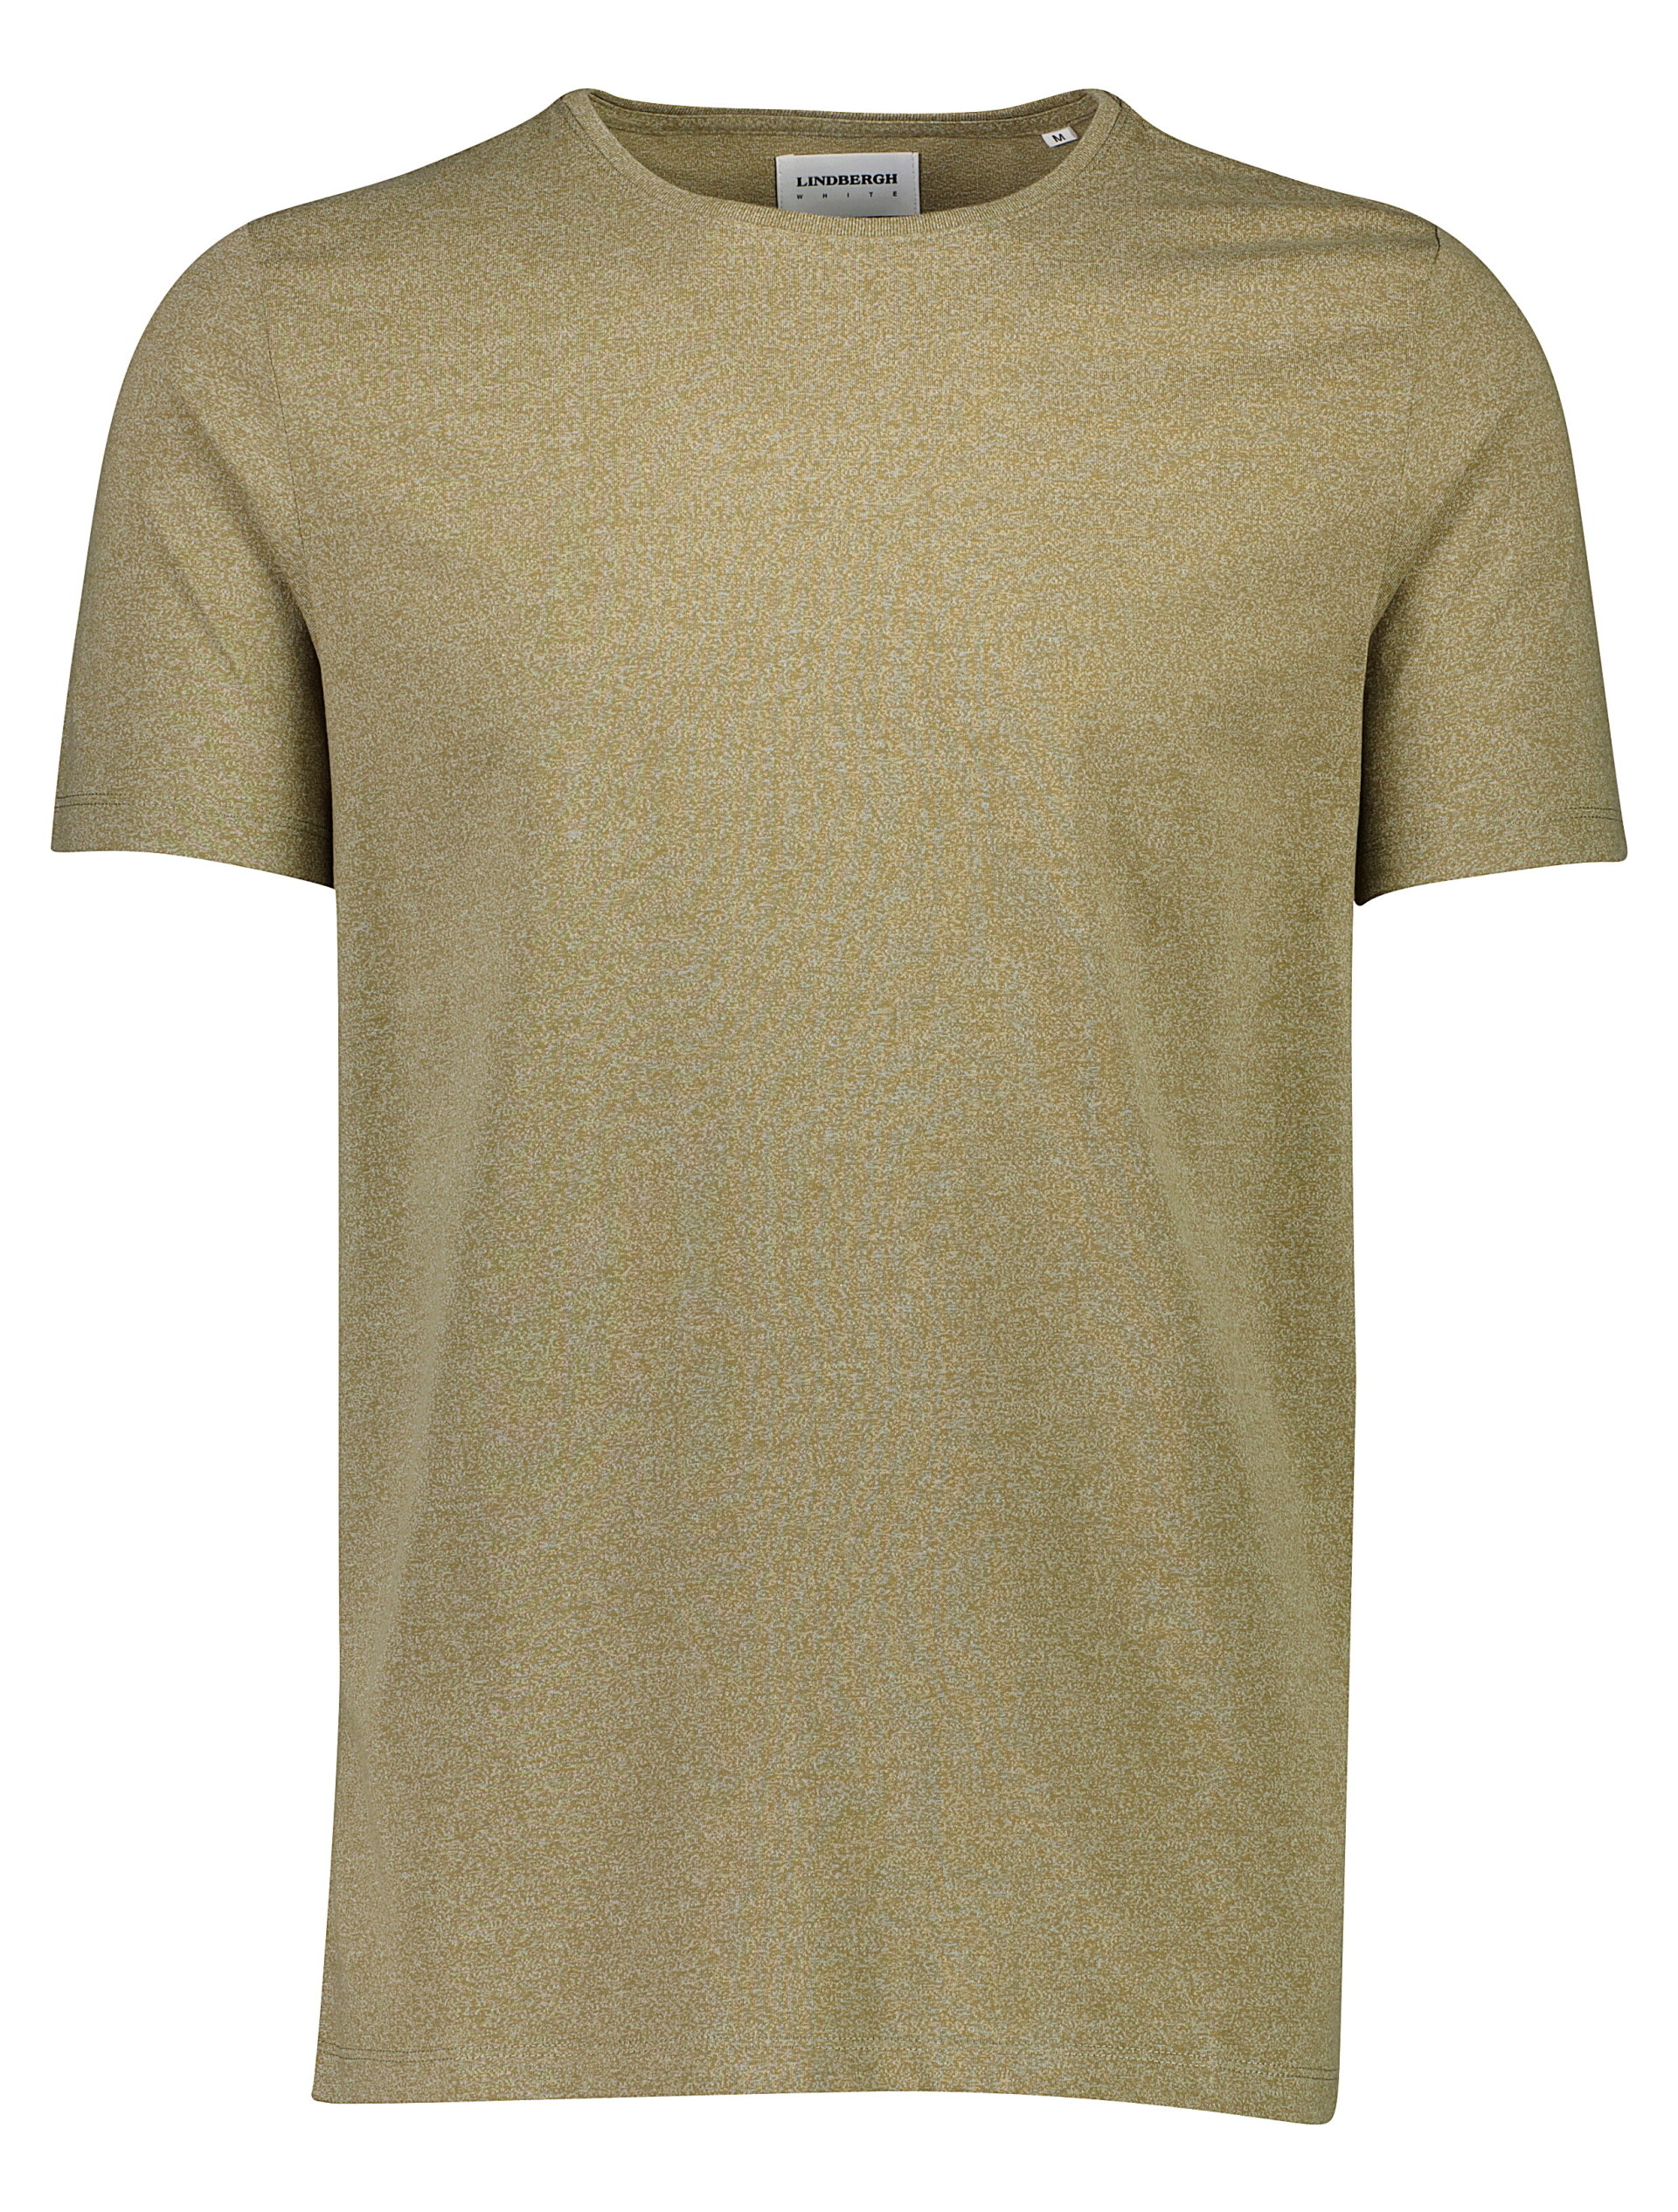 Lindbergh T-shirt grøn / lt army mix 123